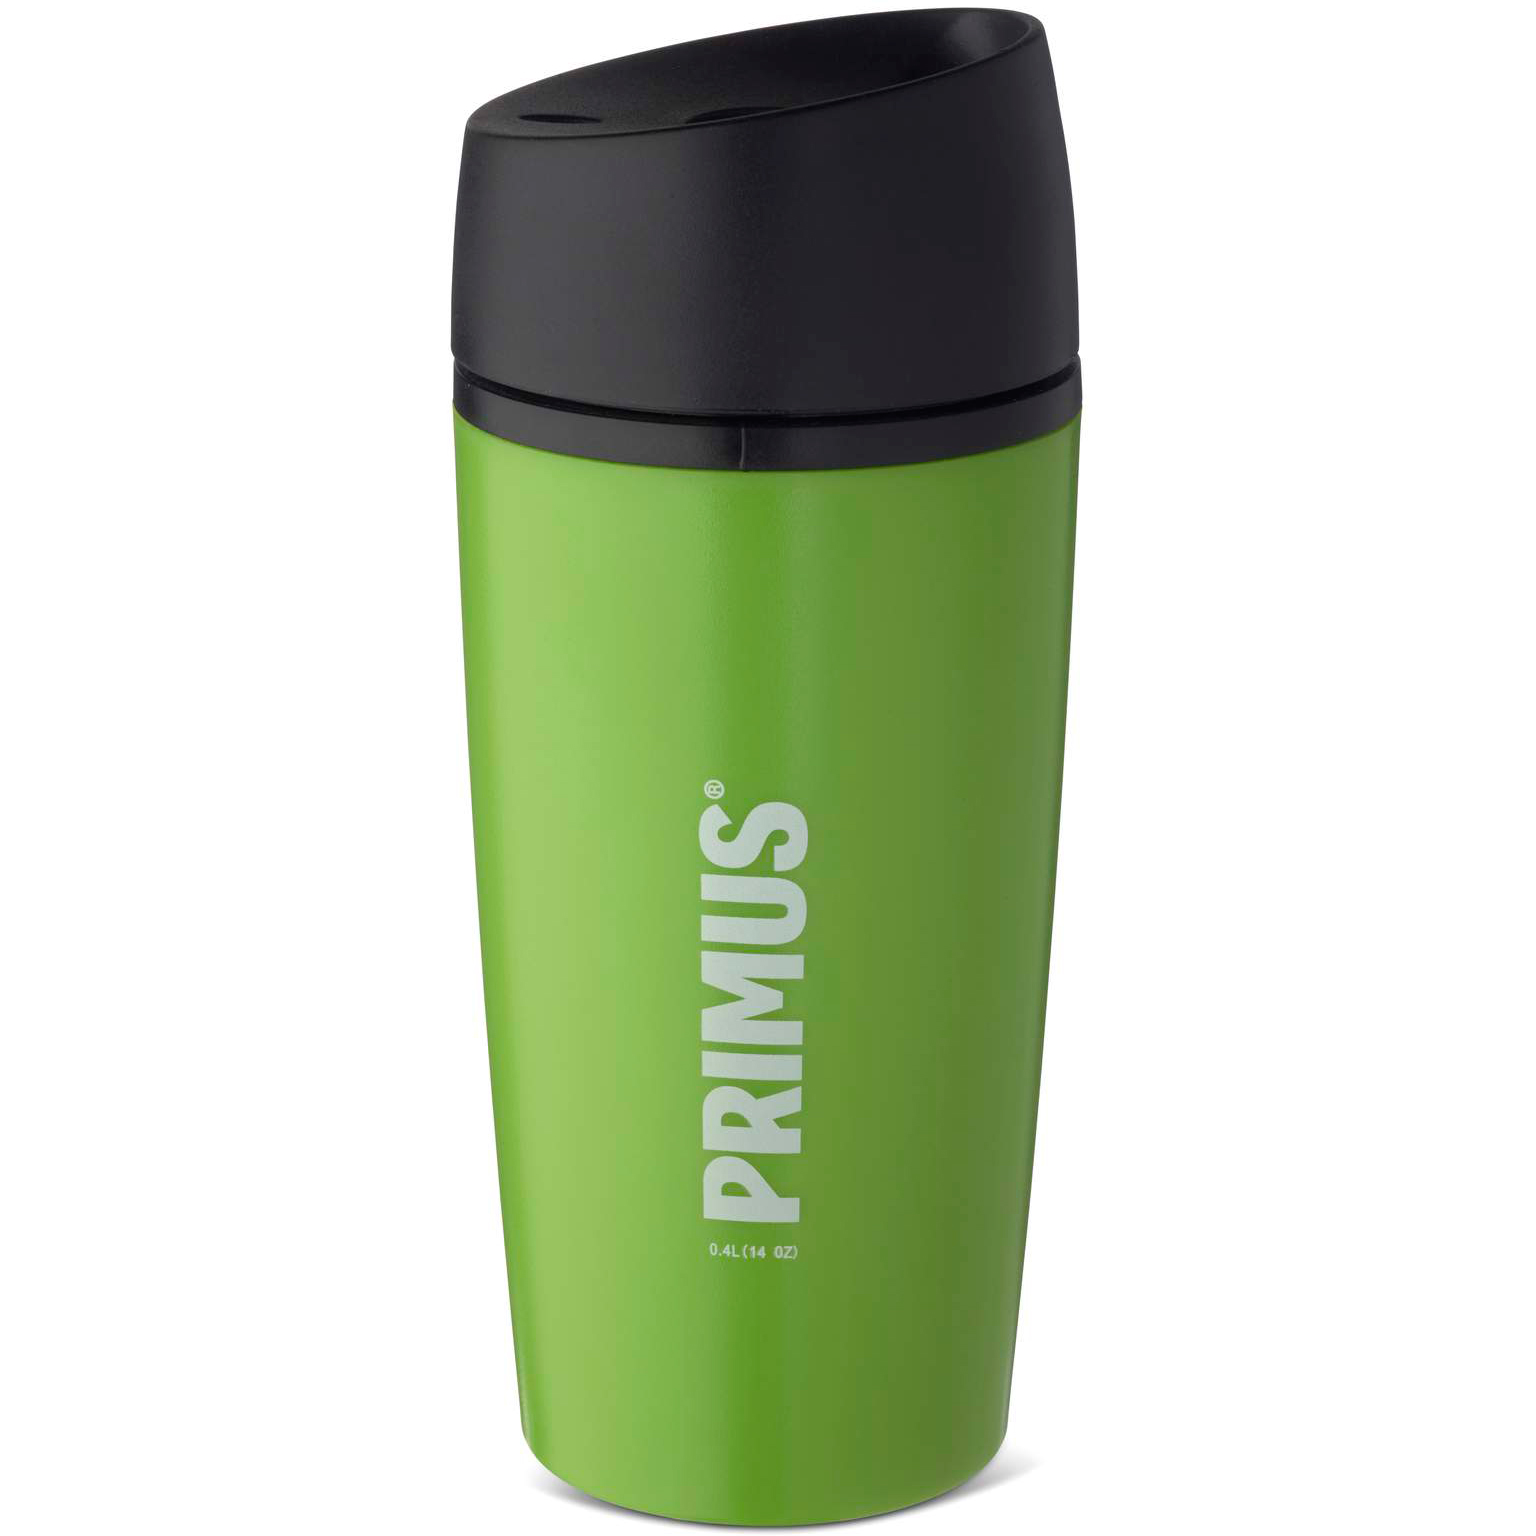 Primus Commuter Mug 0.4 Liter - leaf green